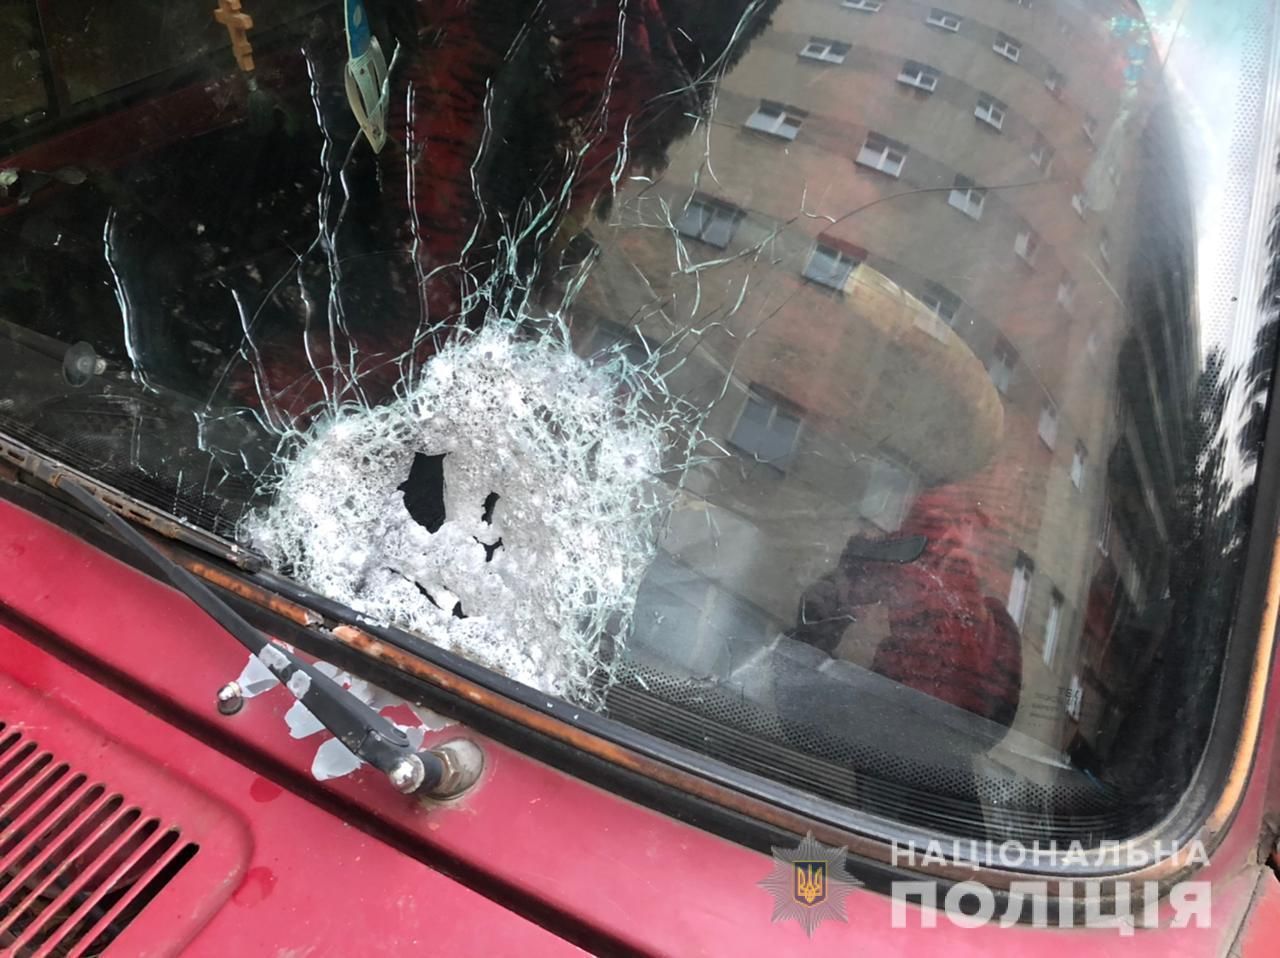 Неизвестные обстреляли автомобиль в Черновцах: есть пострадавшие